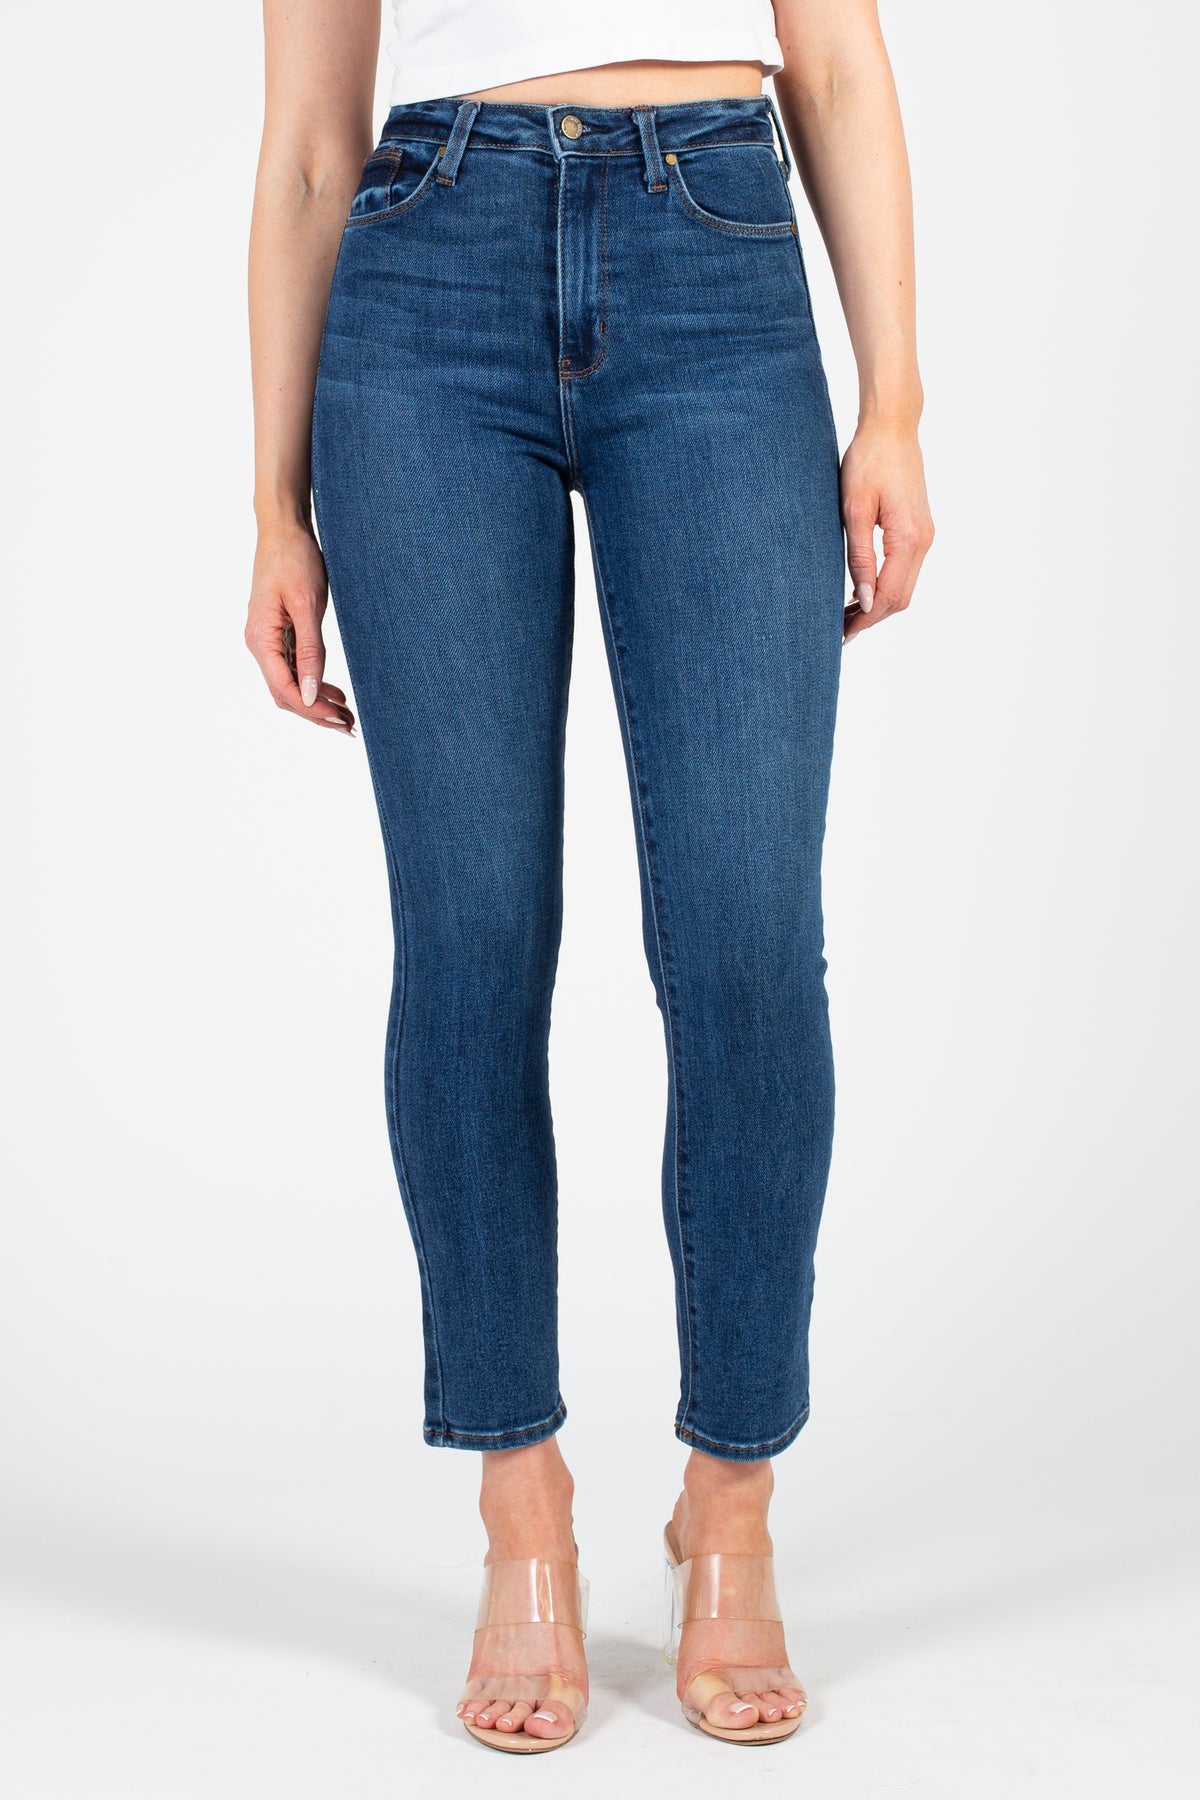 Buy Women's Cotton Lycra Semi-Formal Wear Slim Fit Pants